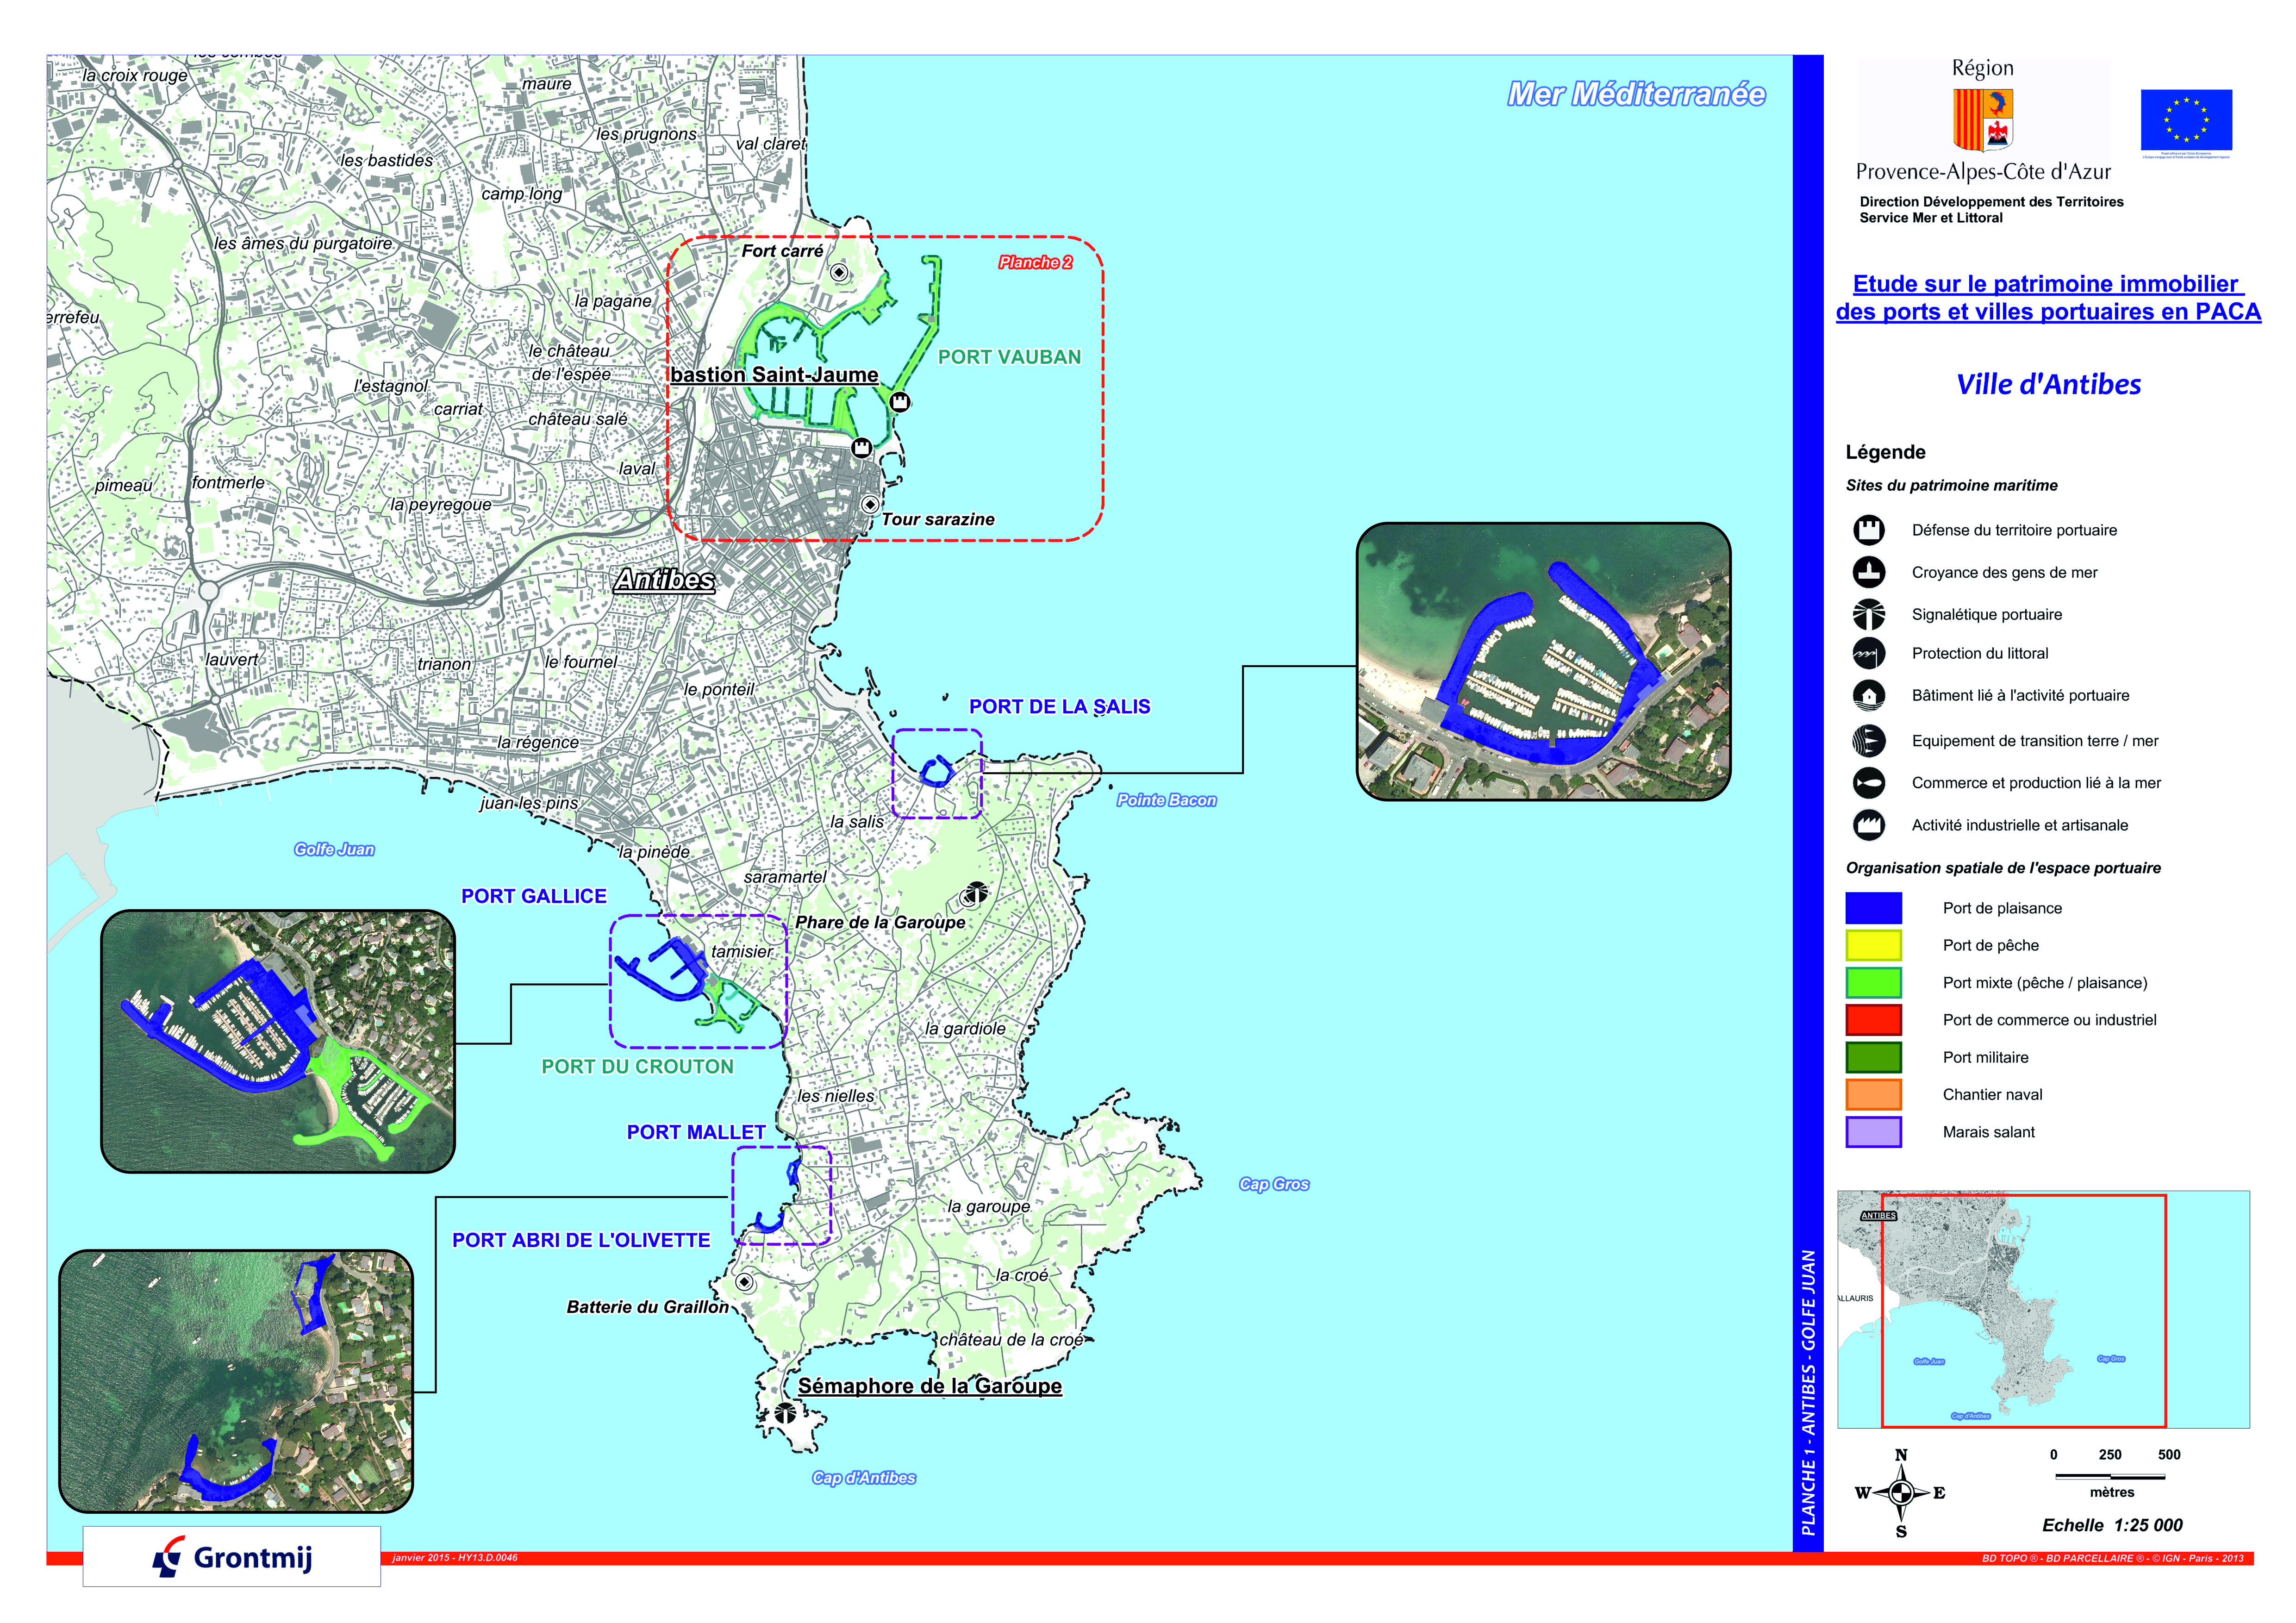 Les aménagements portuaires de la commune d'Antibes